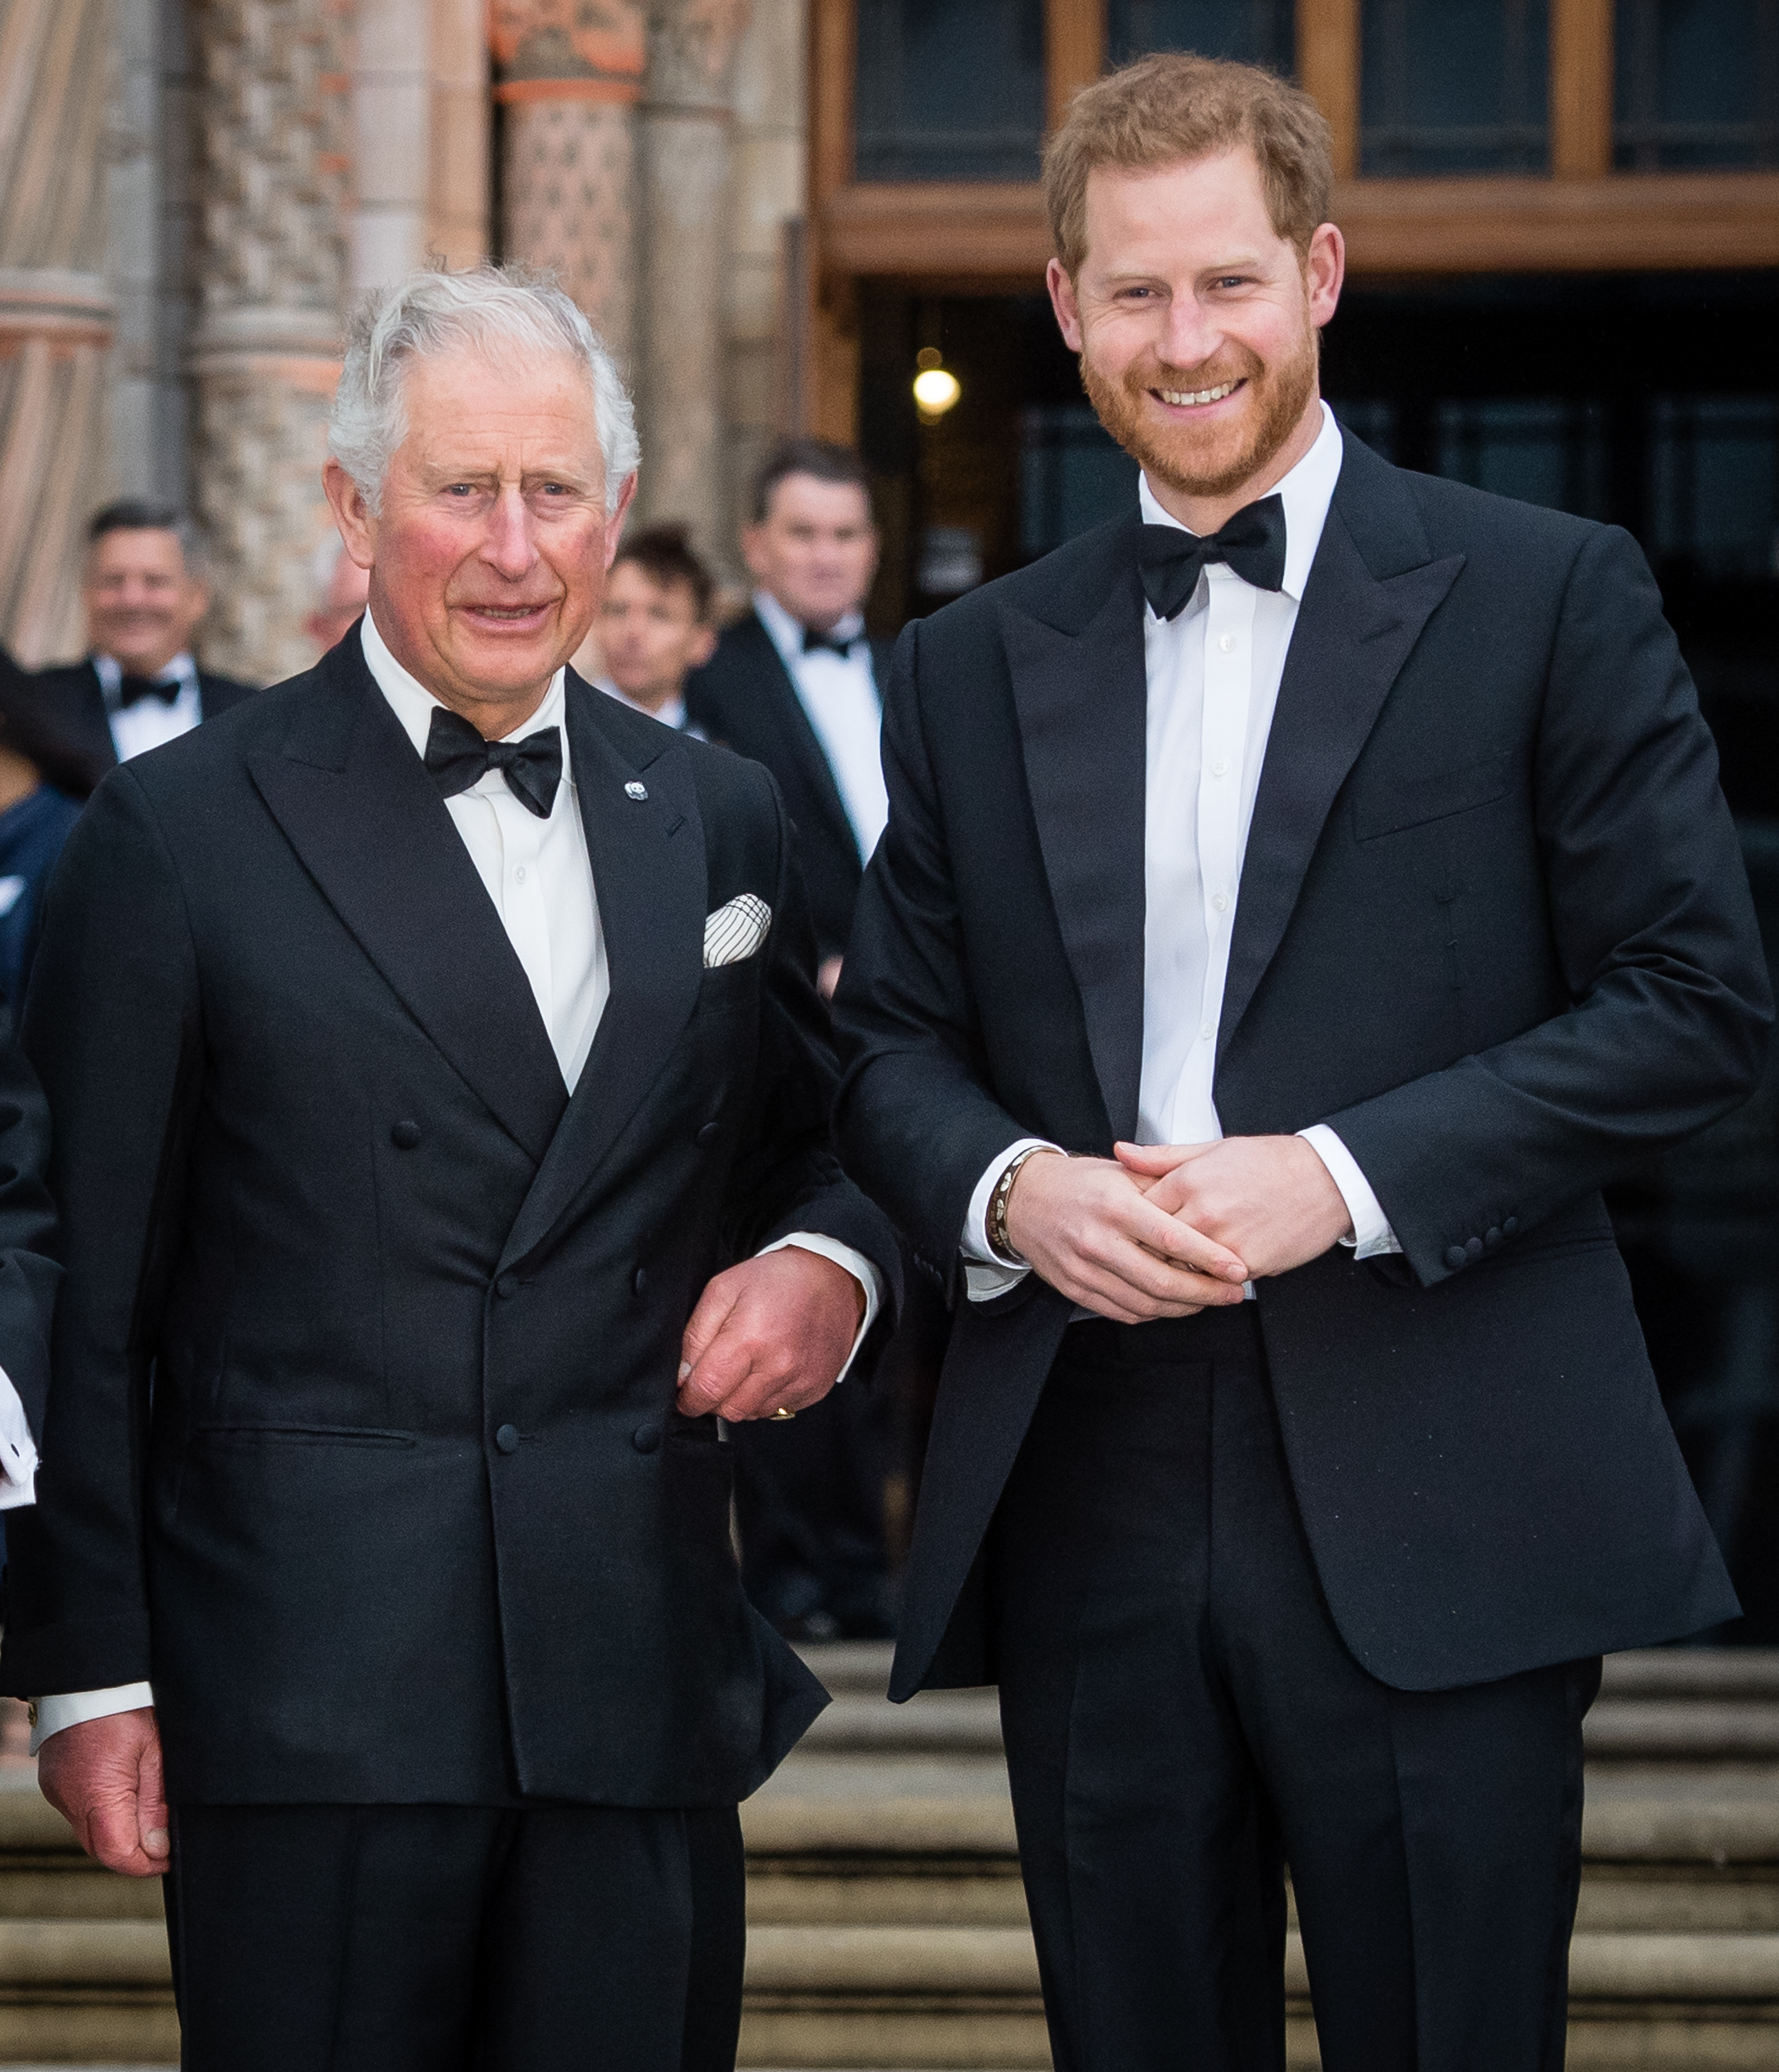 El rey Charles III y el príncipe Harry, Duque de Sussex asisten al estreno mundial de "Nuestro Planeta" el 4 de abril de 2019 | Foto: Getty Images